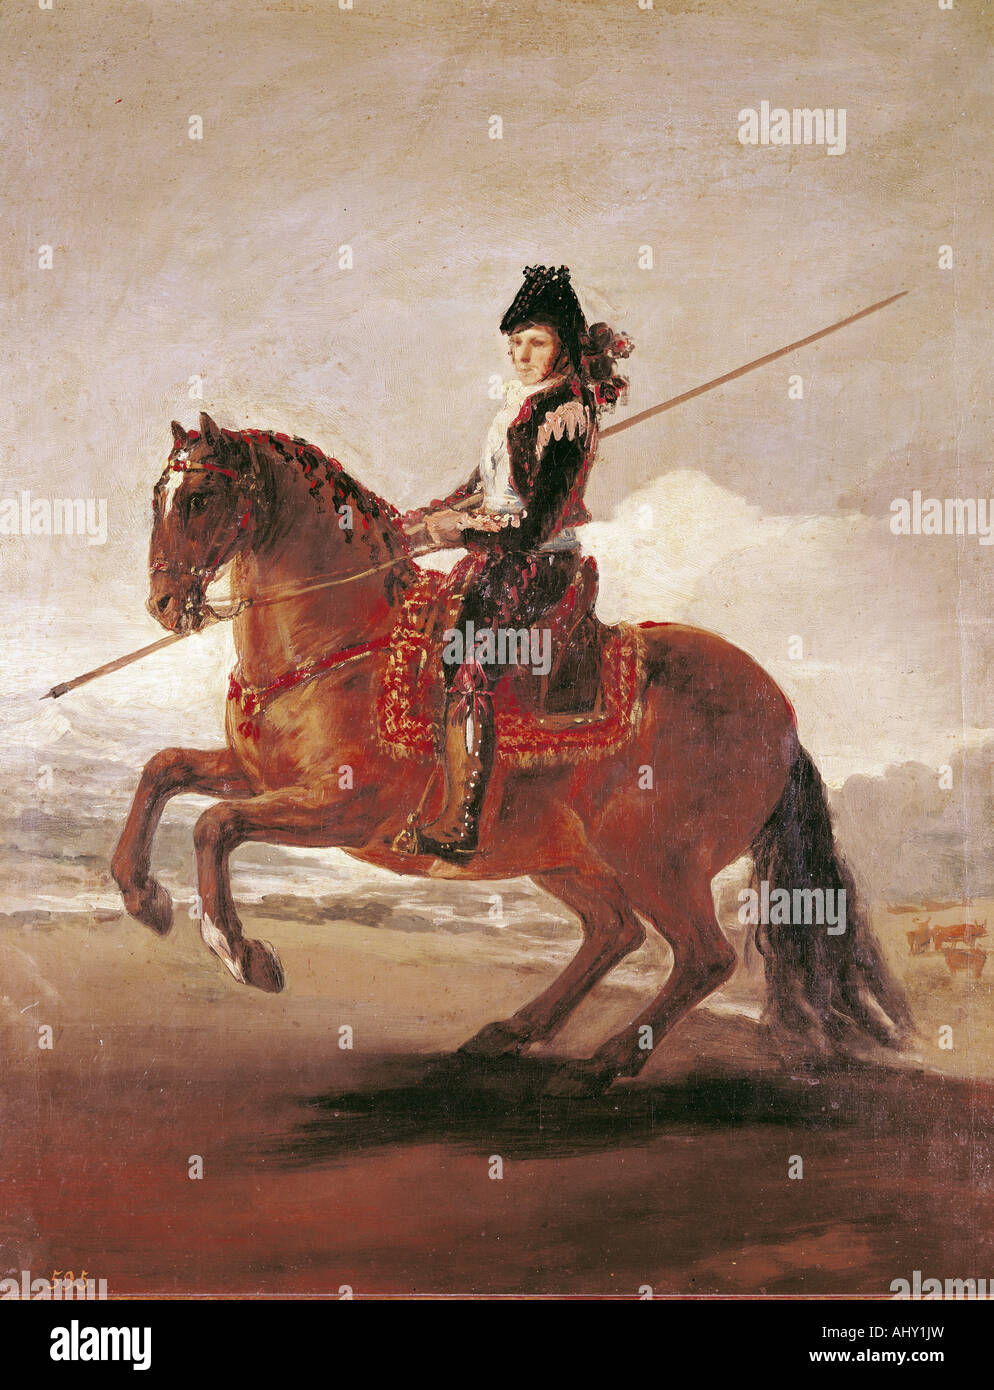 'Fine Arts, Goya y Lucientes, Francisco de, (1746 - 1828), peinture, 'un Picador caballo', ('editions rustica sur l'), Prado, madri Banque D'Images